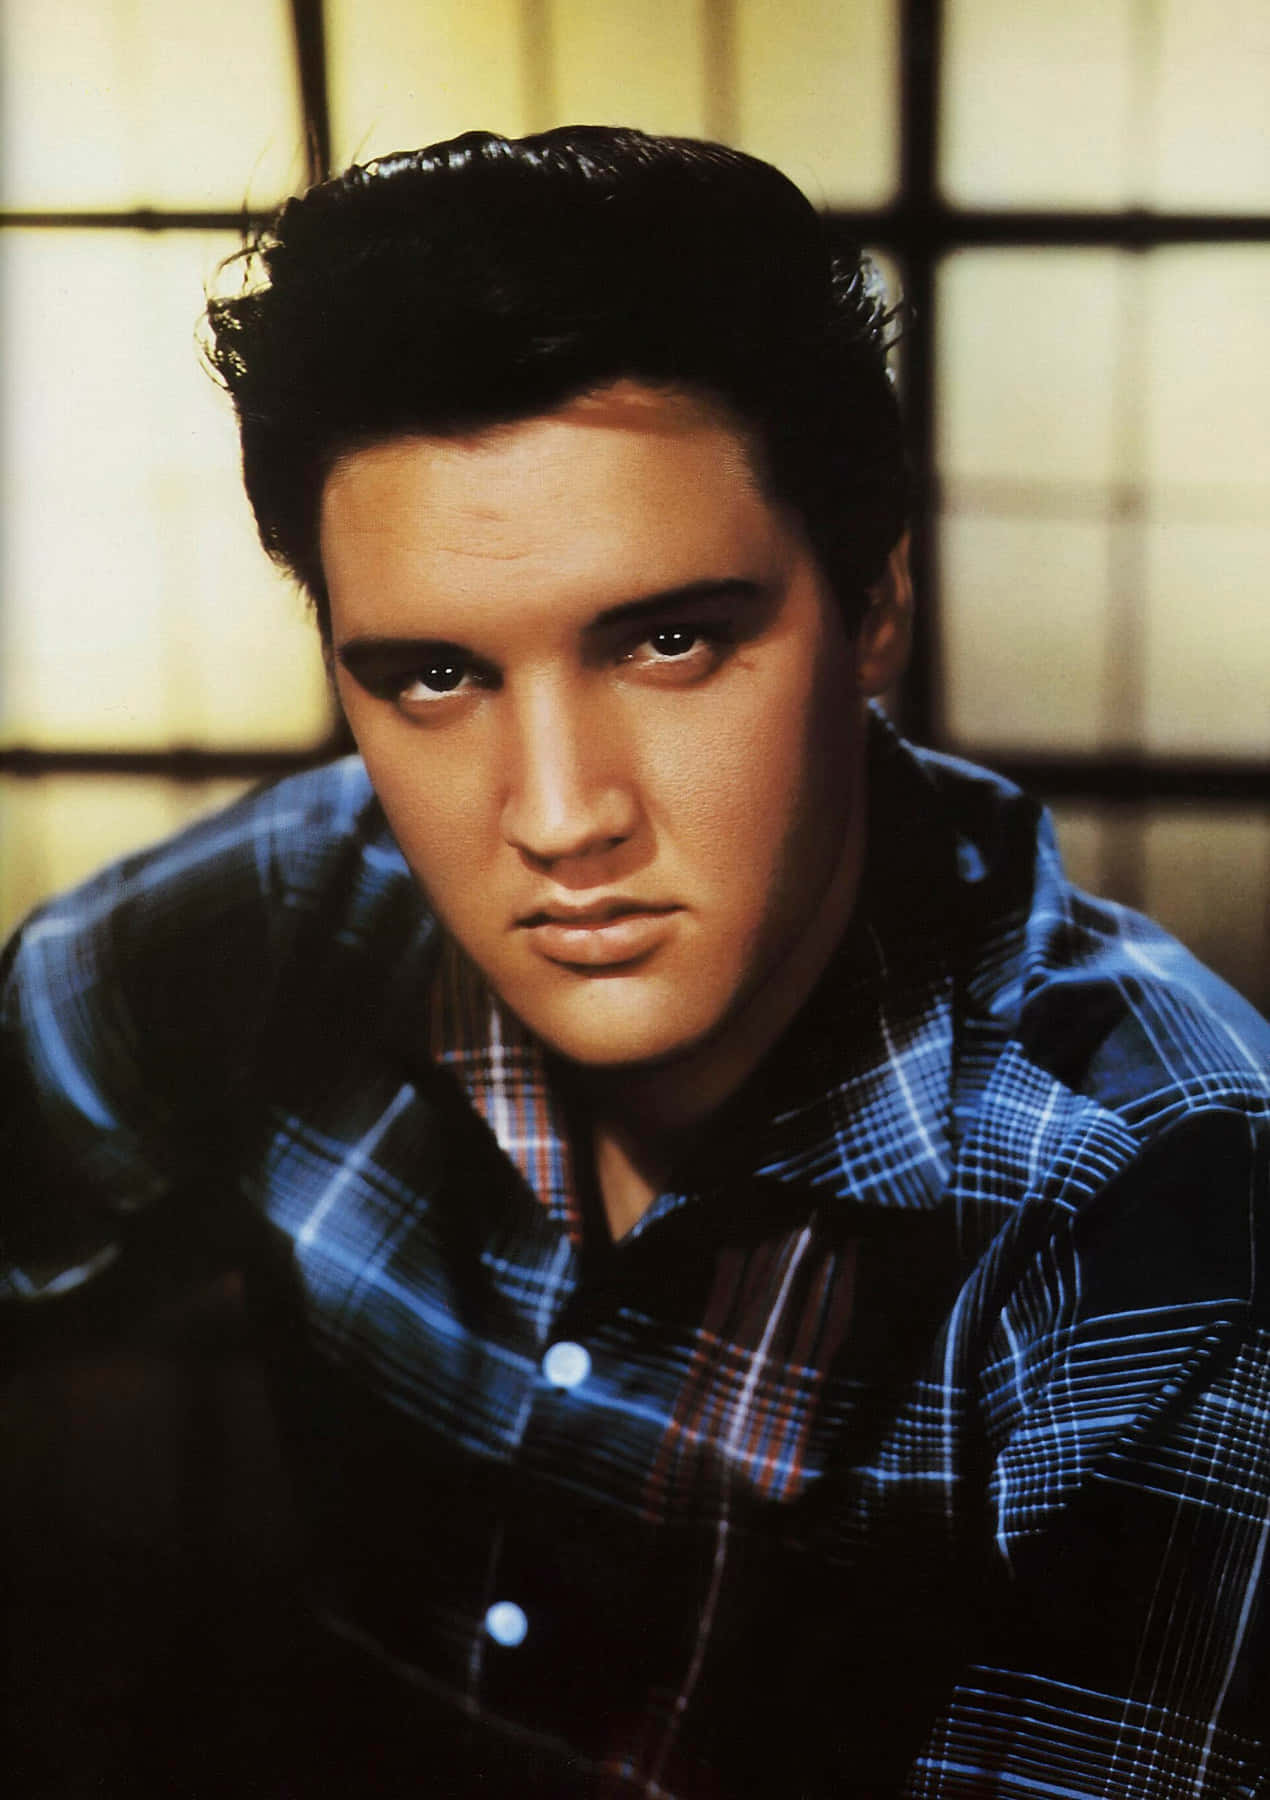 Imagenrindiendo Homenaje A Elvis Presley - El Rey Del Rock